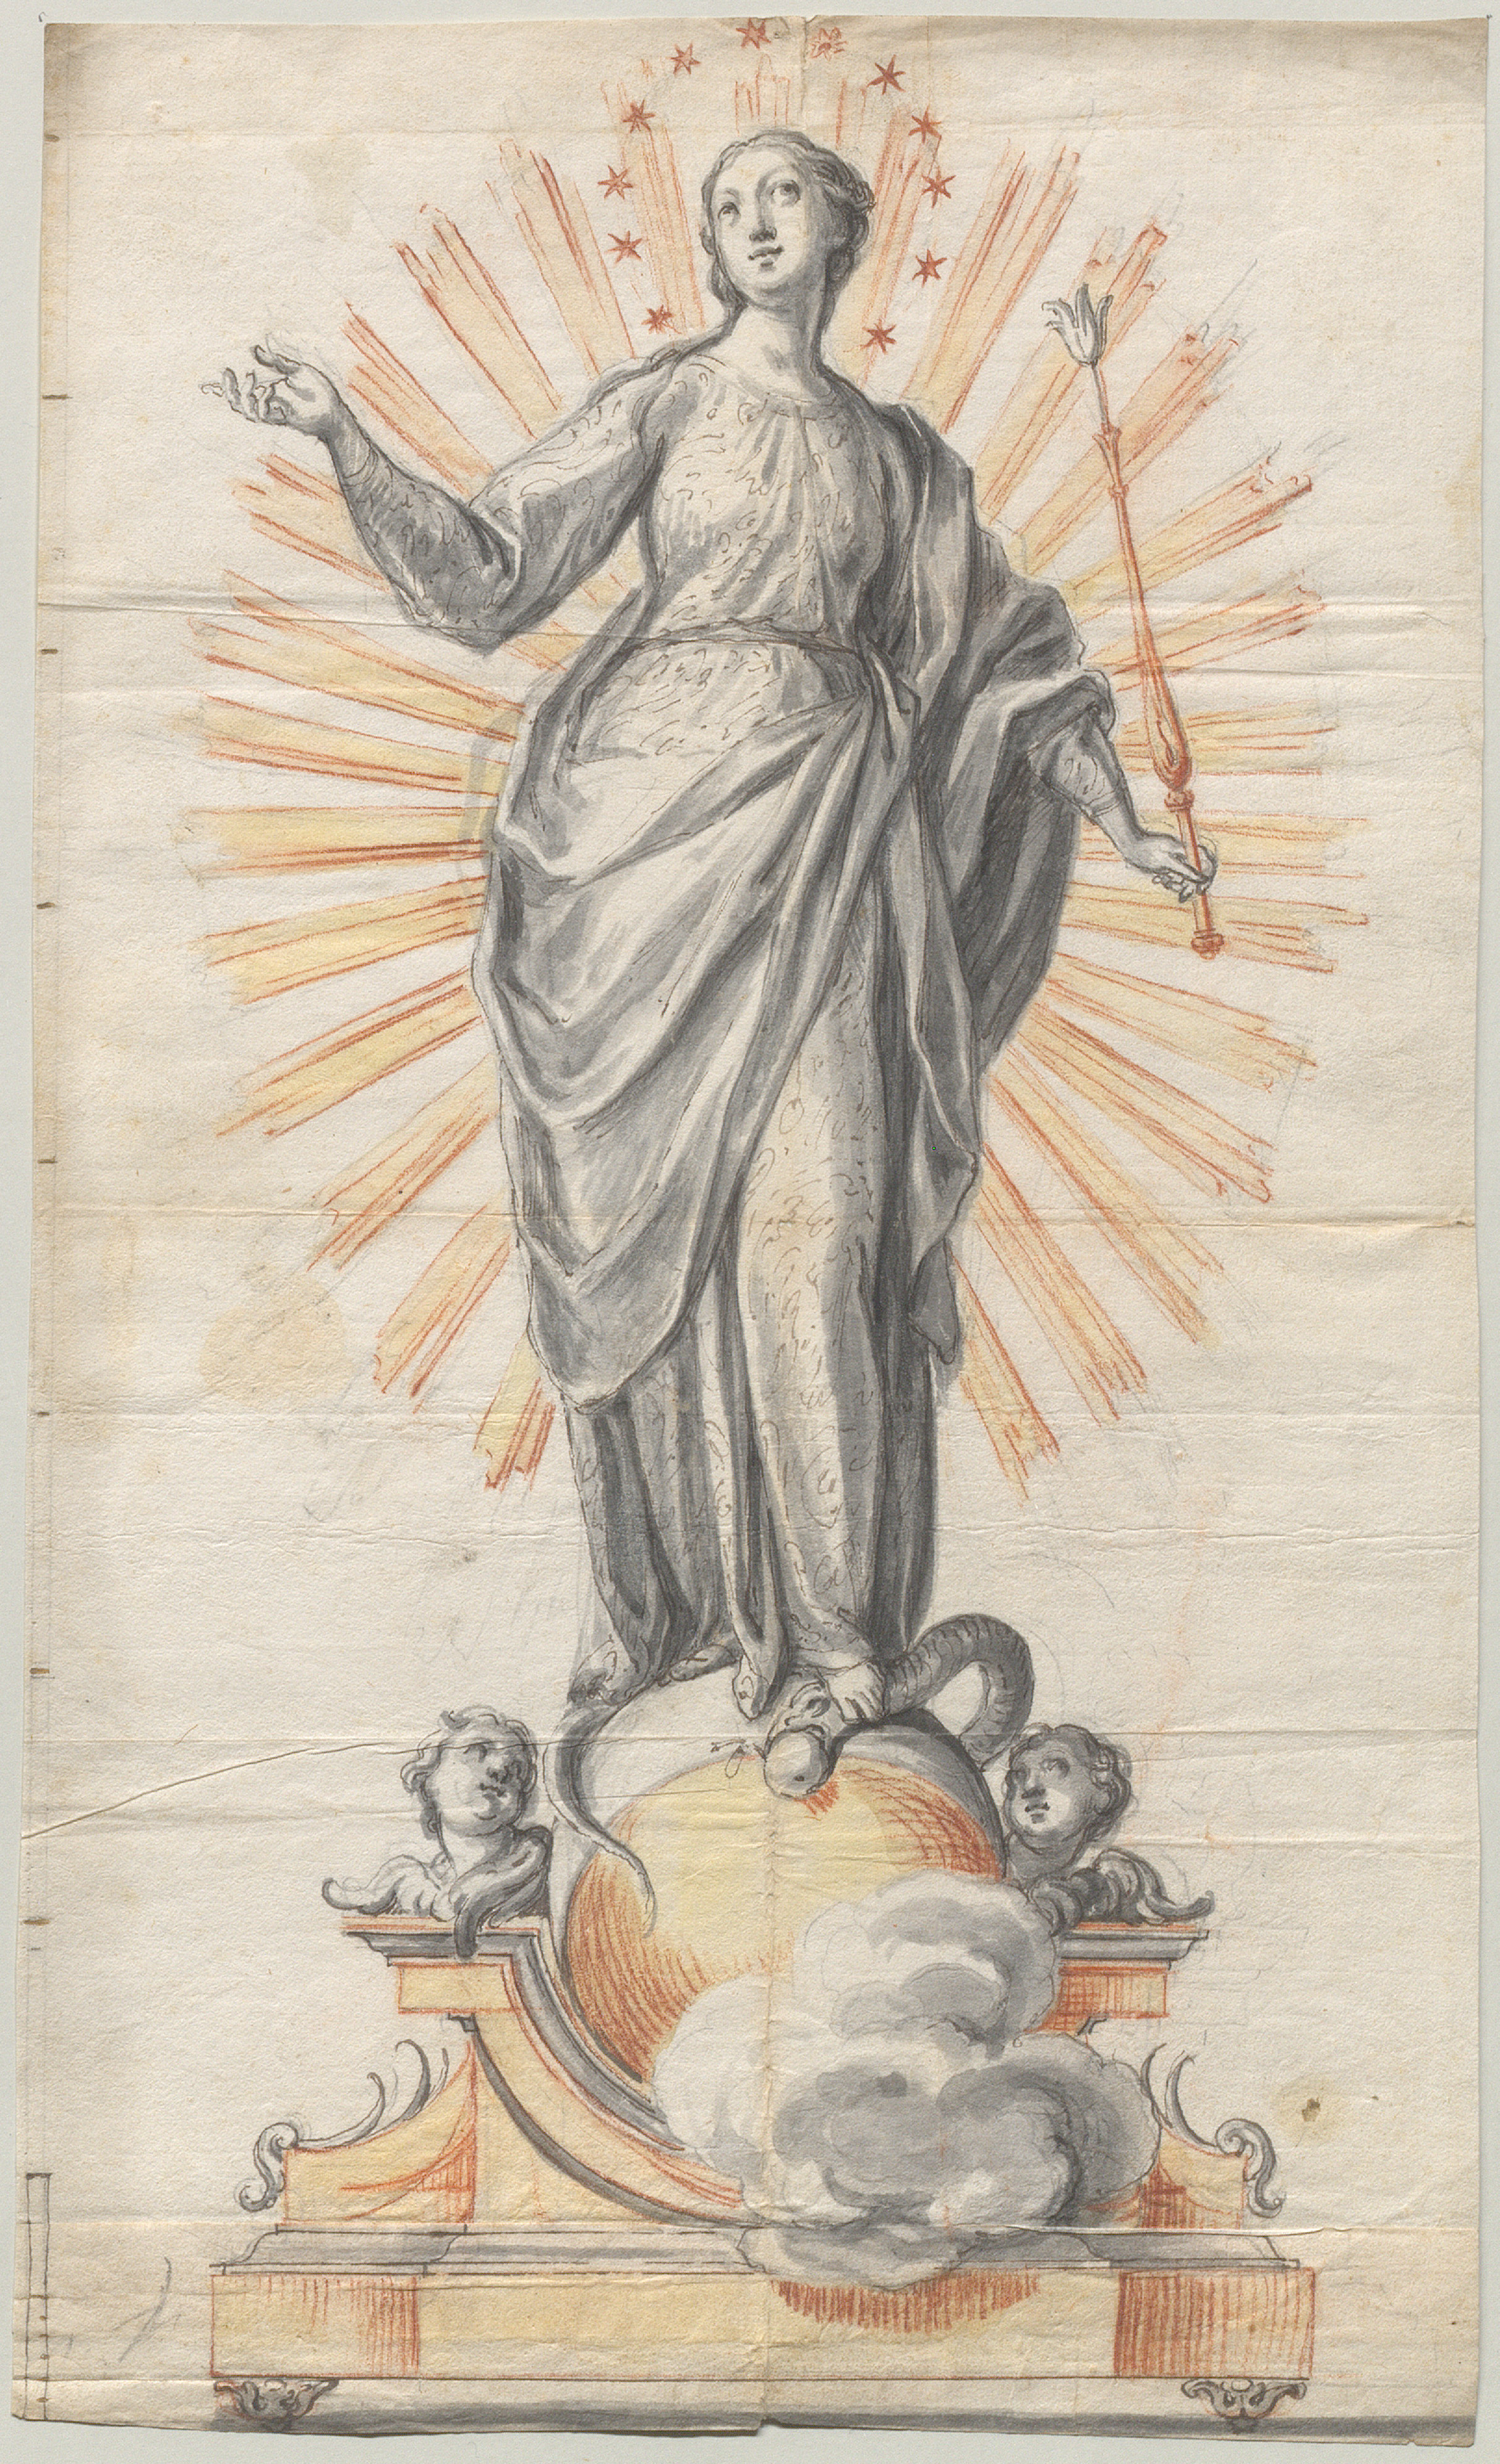 Silberfigur der Maria Immaculata in der Münchner Frauenkirche<br/>Entwurfszeichnung von Johann Adam Miller, 1731